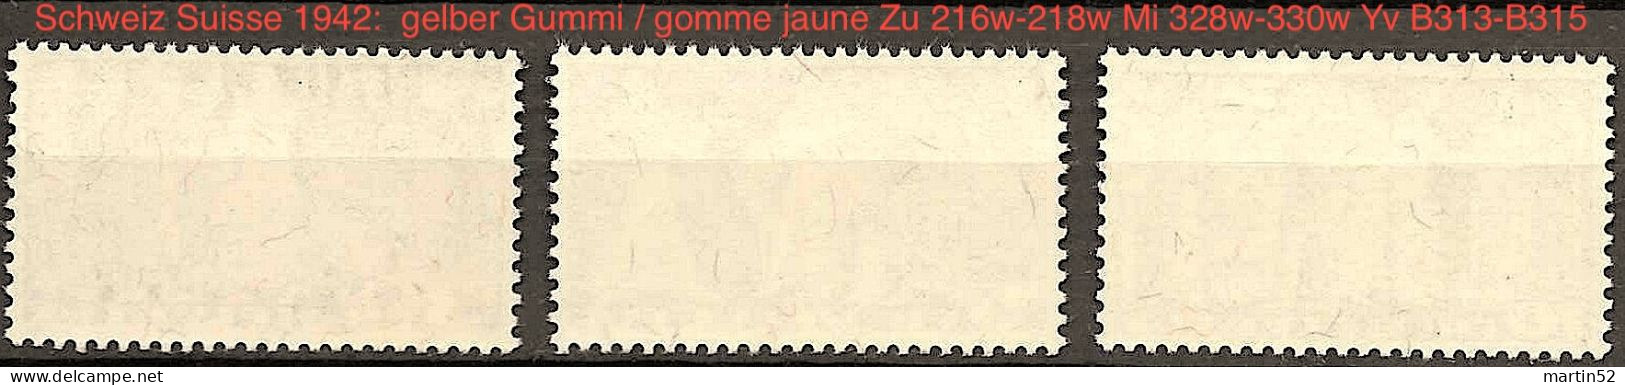 Schweiz Suisse 1942: Gelber Gummi+papier Et Gomme Jaune Zu 216w-218w Mi 328w-330w Yv B313-B315 ** MNH (Zu CHF 260.00) - Ongebruikt